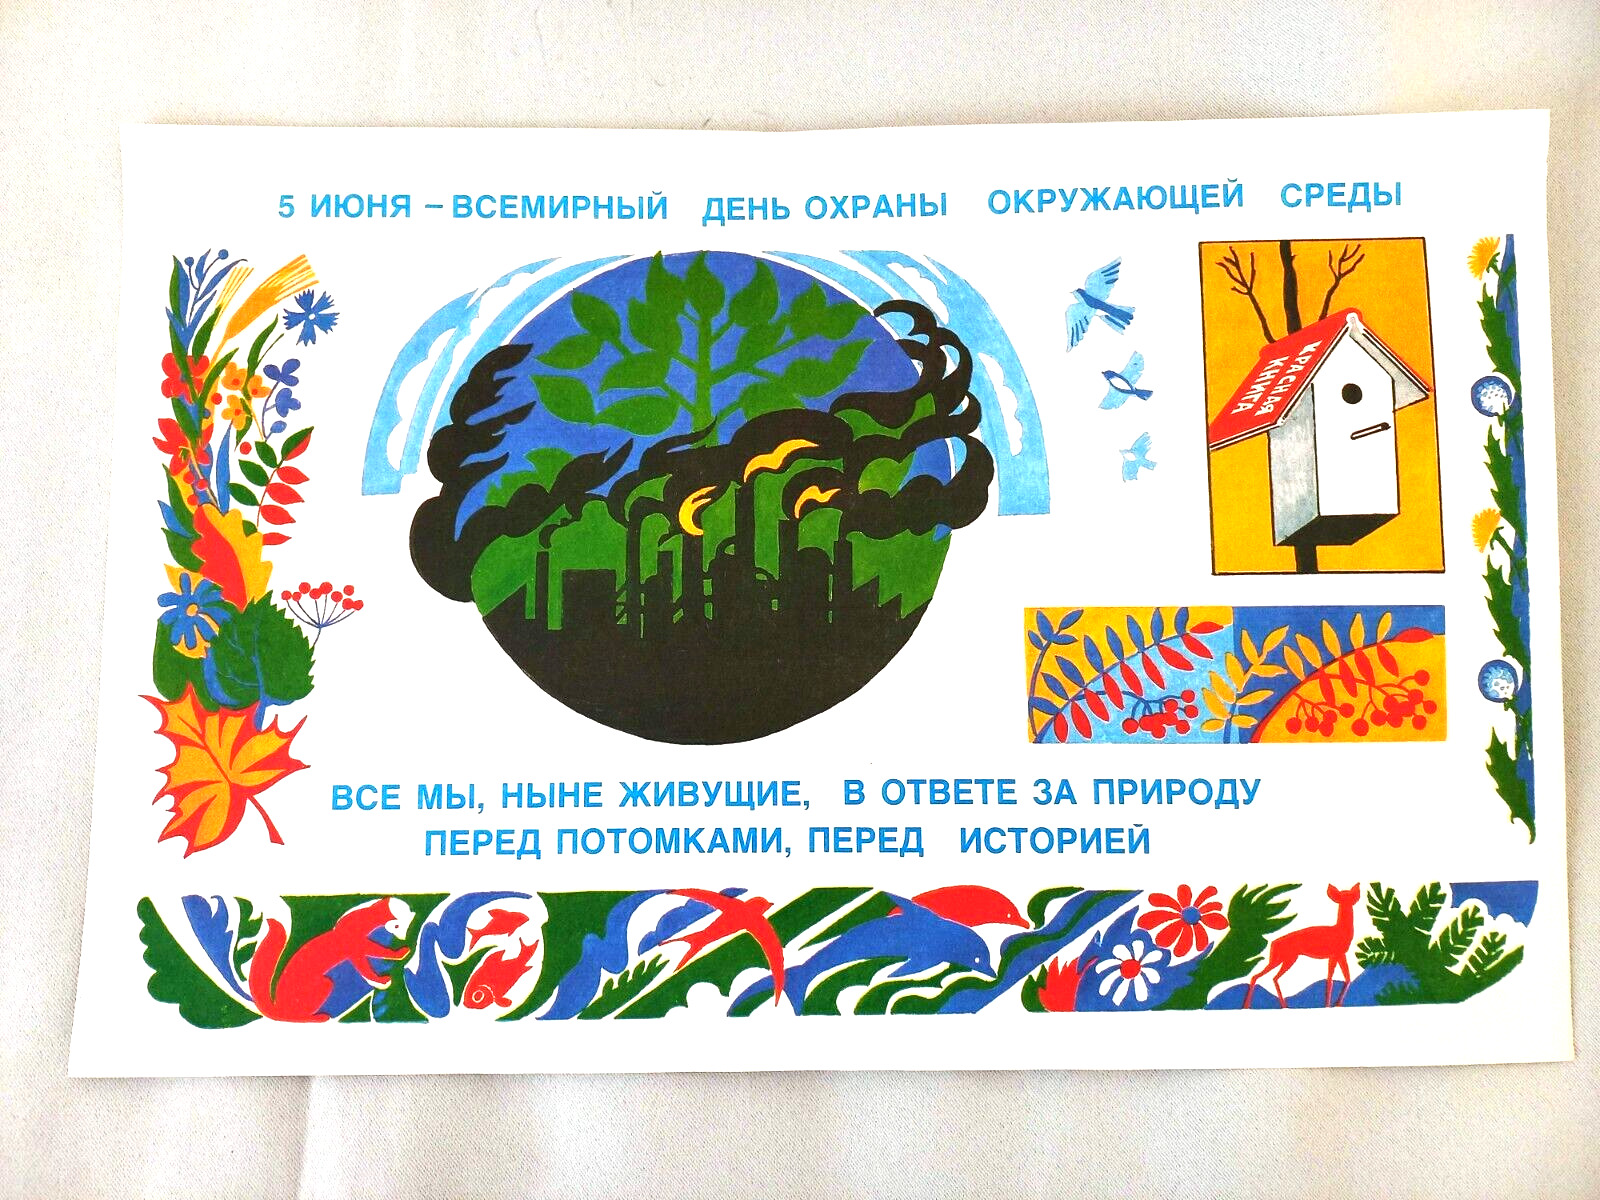 Soviet Propaganda Poster December June 5 - World Environment Day